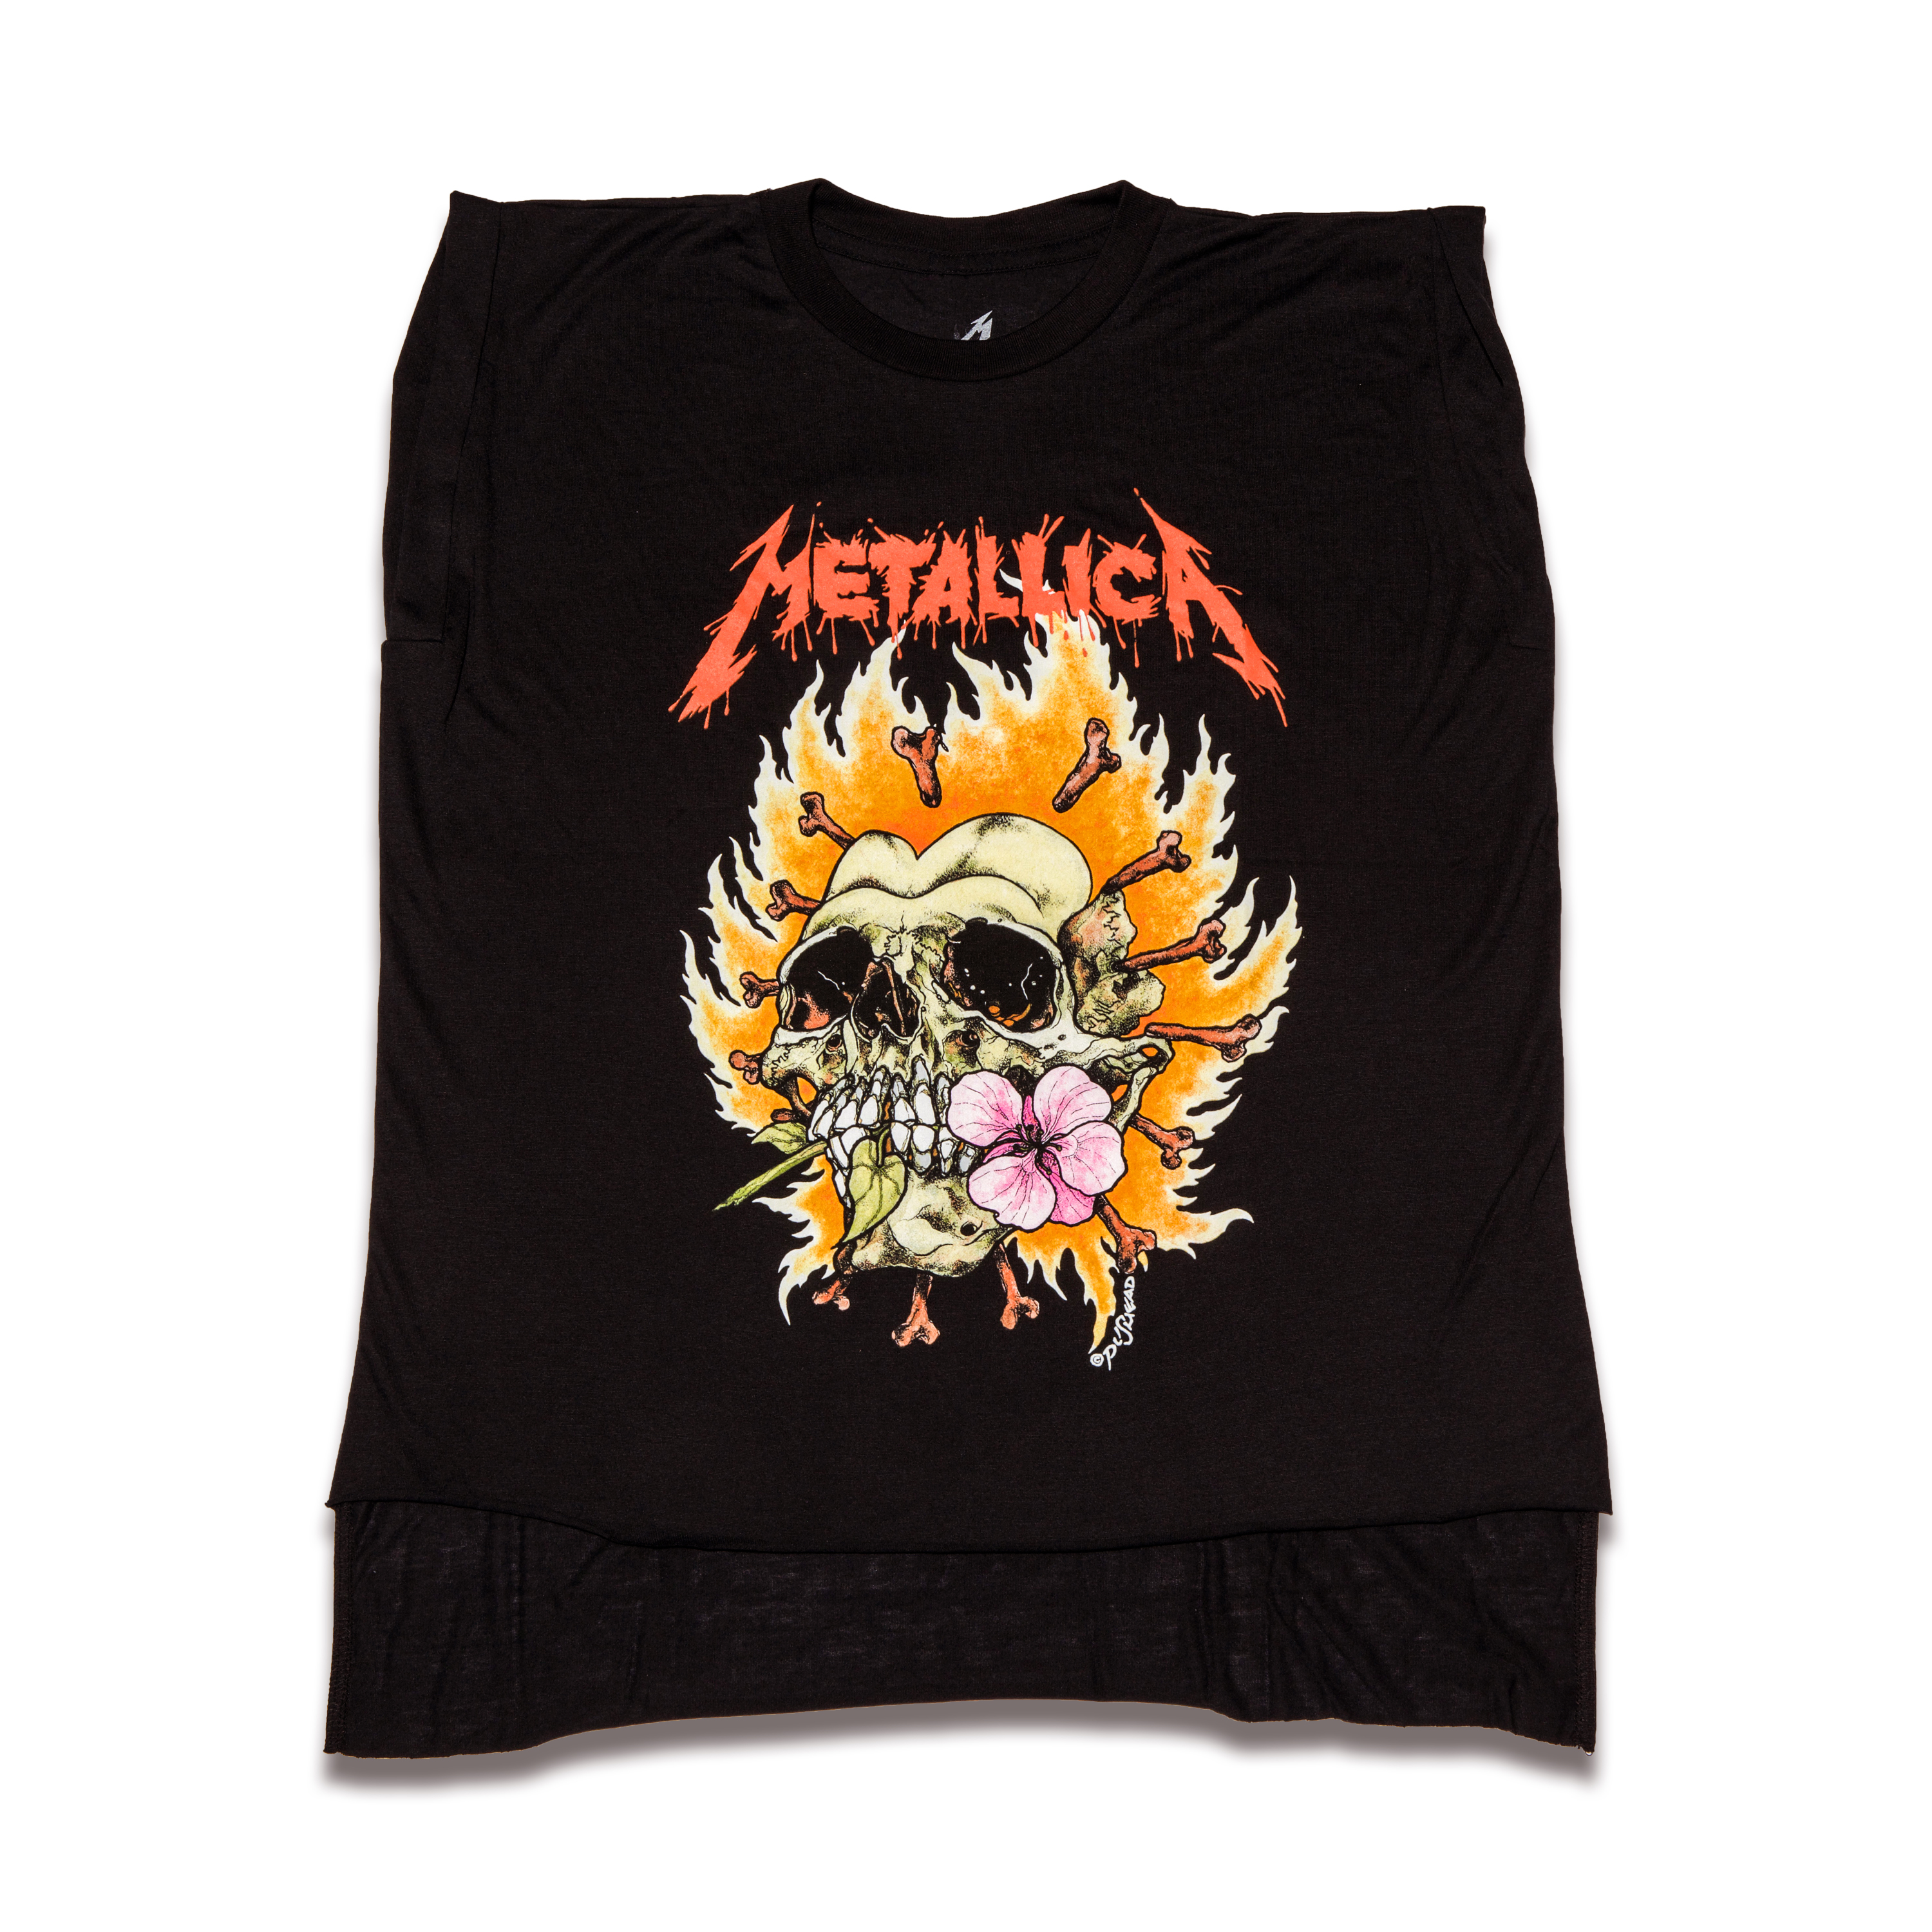 Women's Burning Flower Sleeveless T-Shirt